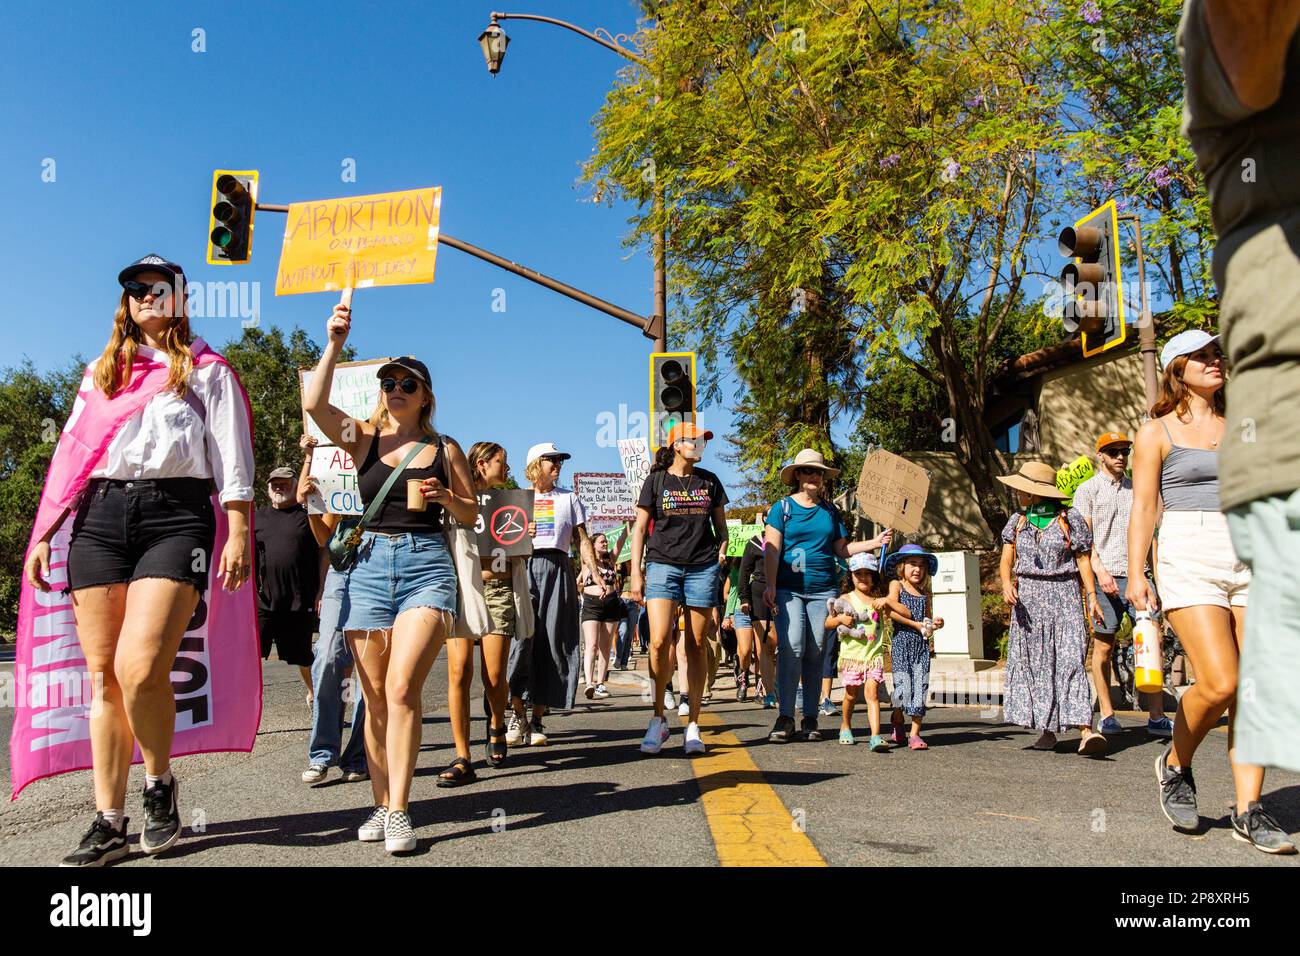 Die örtliche Gemeinschaft stellt sich als Frauenmarsch heraus, der gegen den Sturz von Roe gegen Wade in einer kleinen Stadt protestiert. Ojai, Kalifornien. Stockfoto